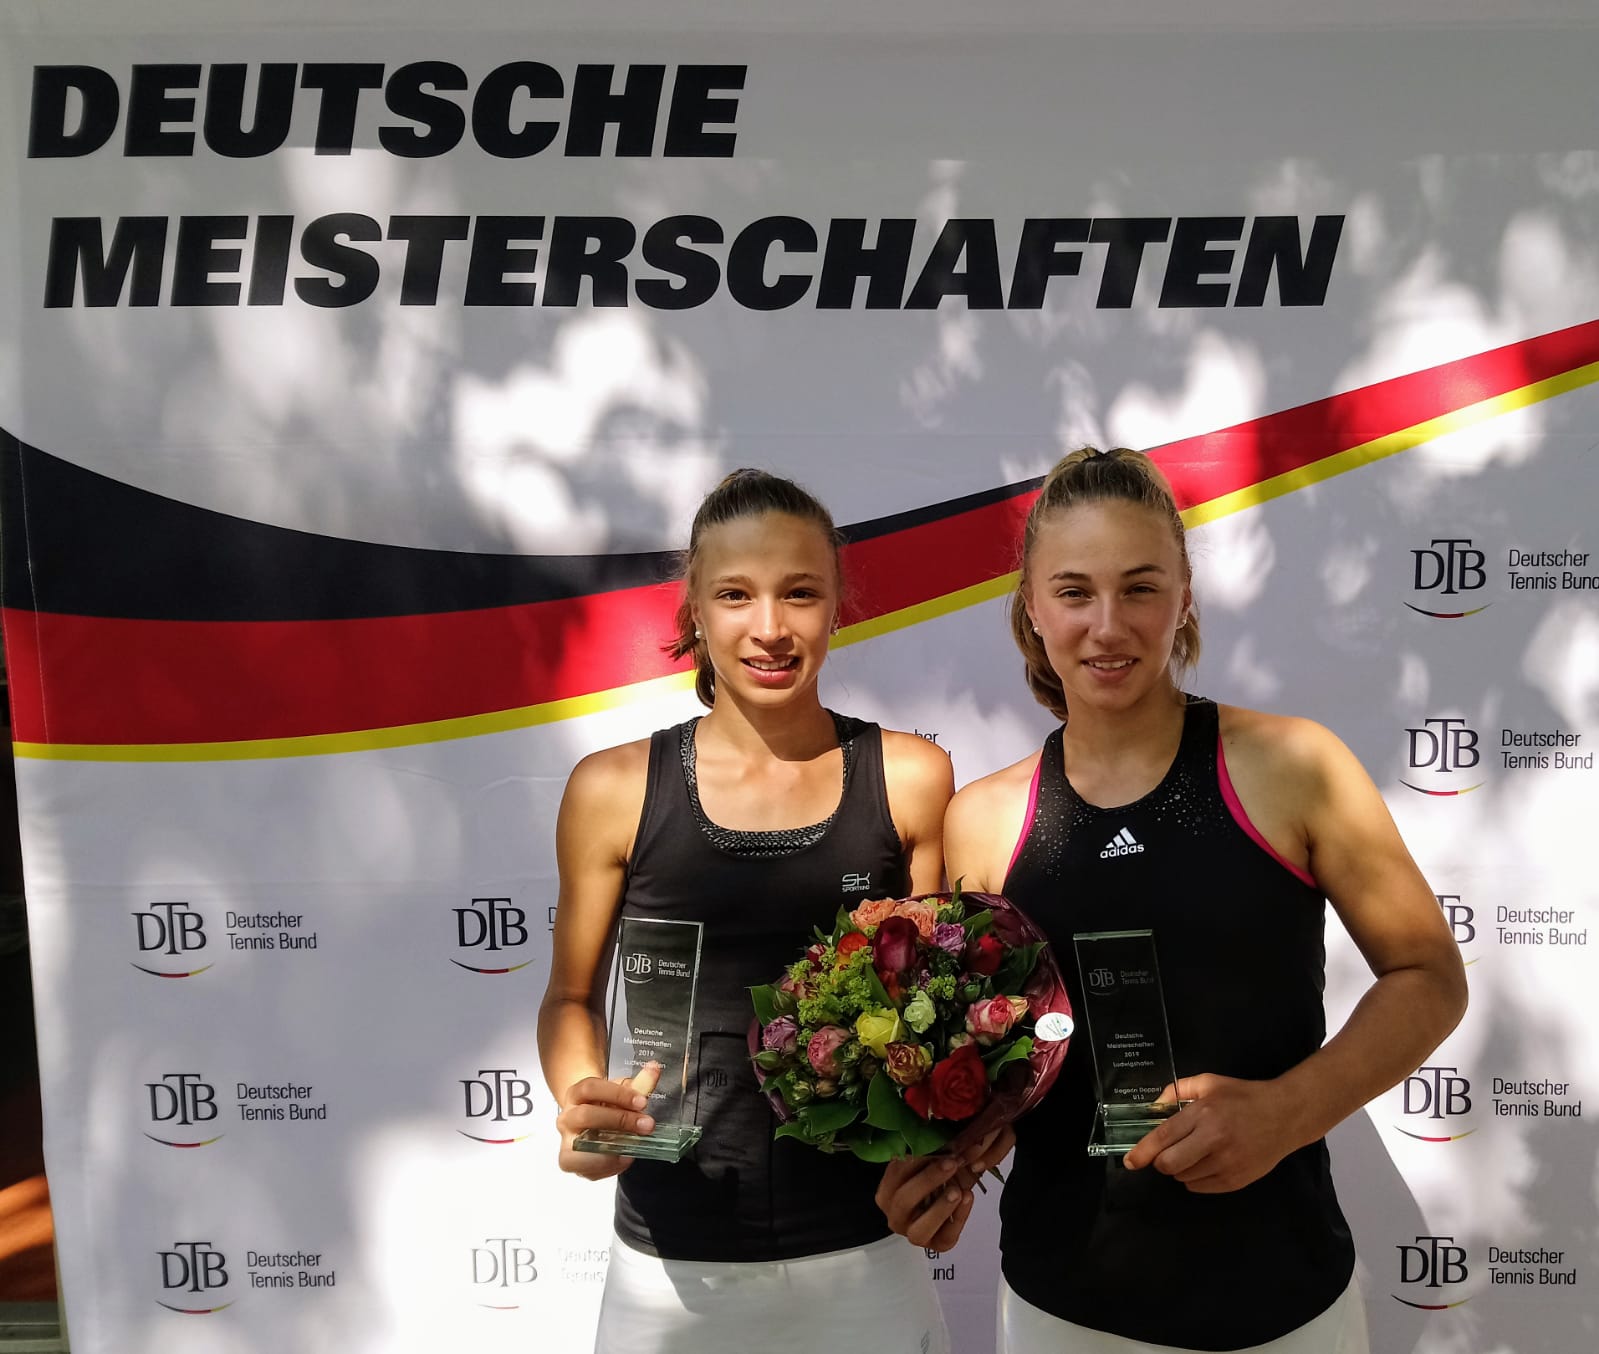 Josy und Emma Daems sind Deutsche Meister im Doppel – Josy gewinnt auch im Einzel!